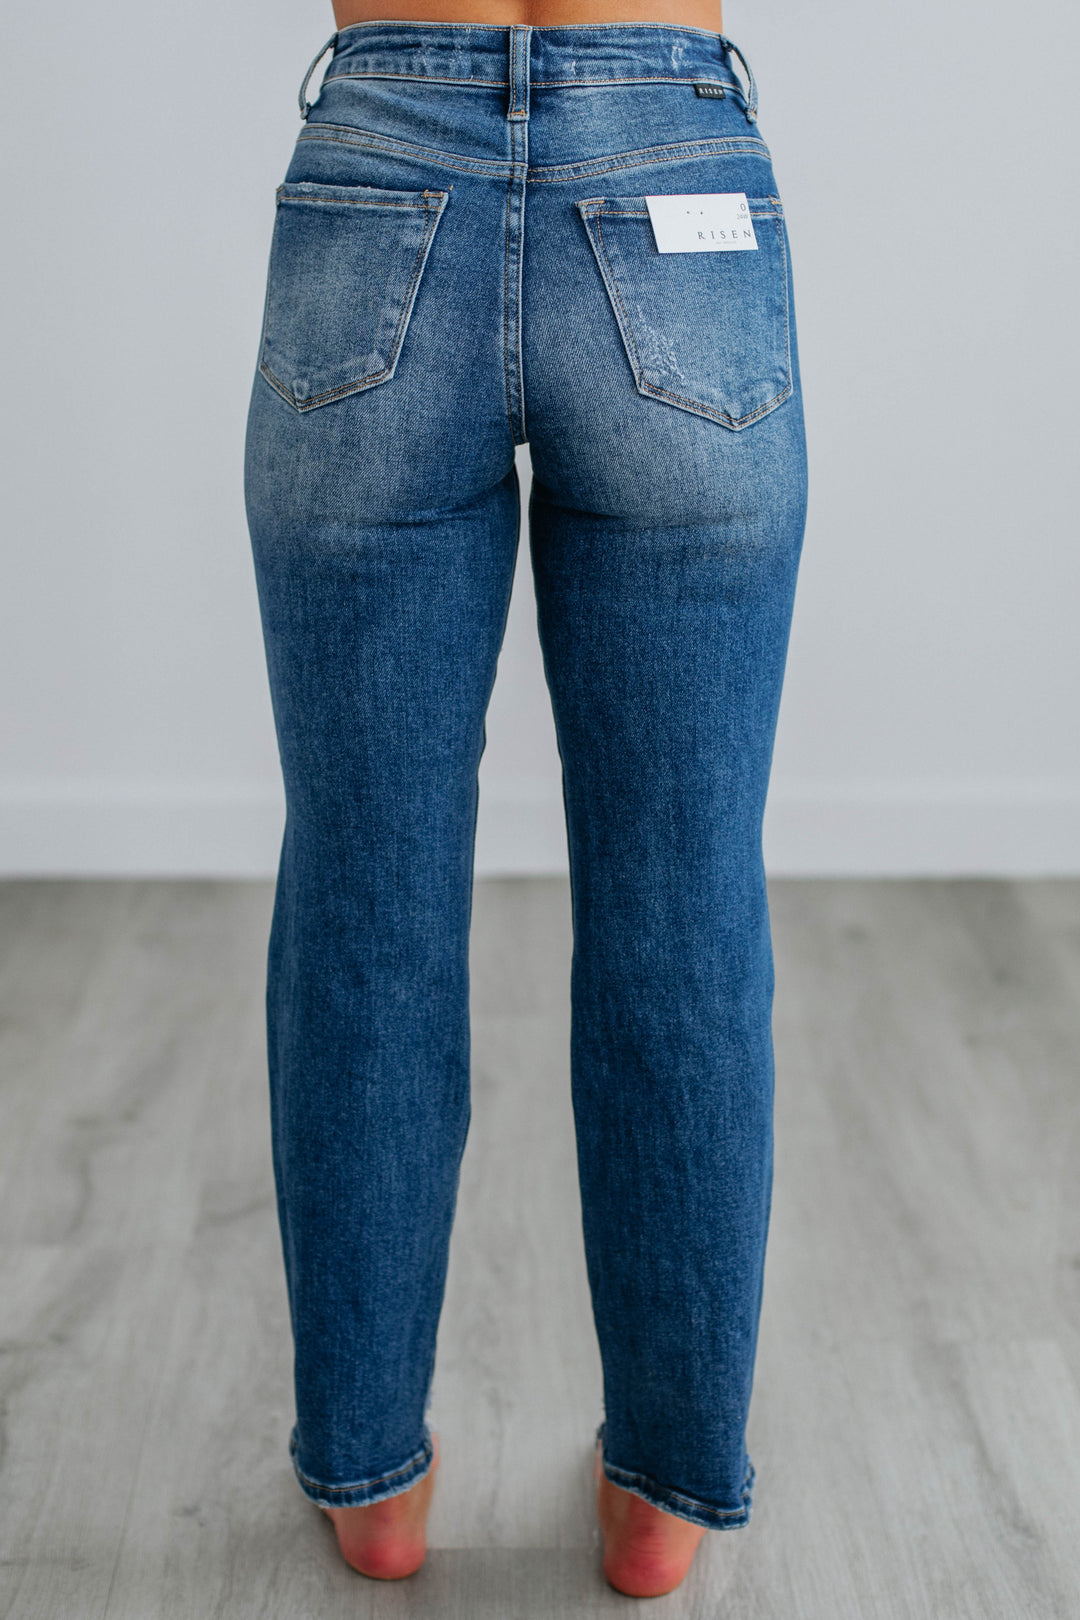 Millie Risen Jeans - Medium Wash